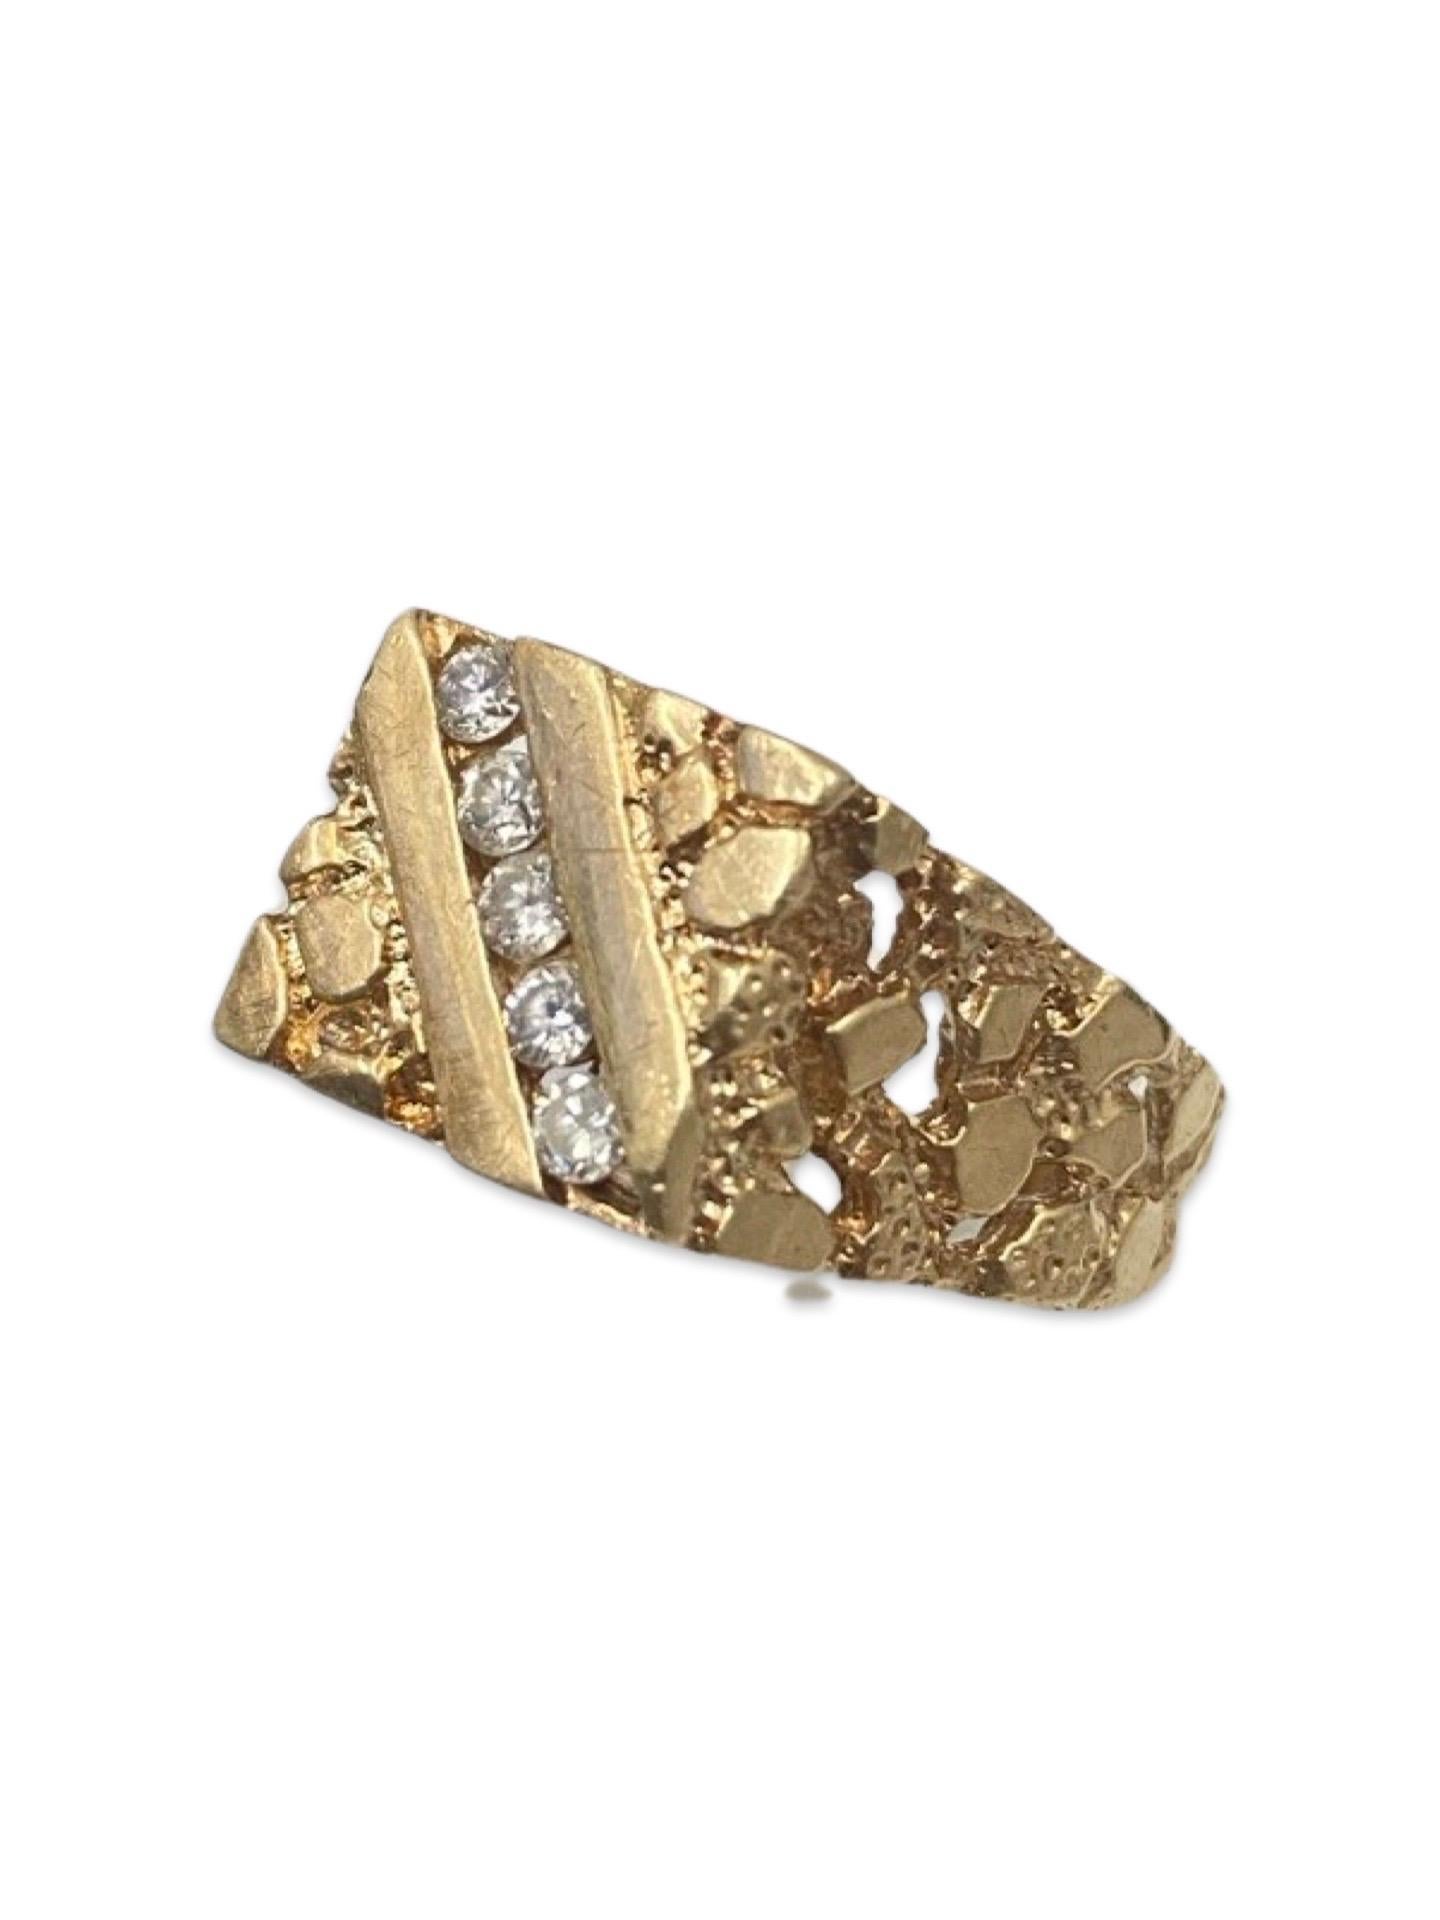 Vintage 0.40 Carat Diamonds Nugget Design Ring 14k Gold. La bague mesure 12 mm de hauteur et comporte 5 diamants ronds de haute qualité pesant chacun environ 0,08 ct pour un total de 0,40 ctcw. La bague est une véritable icône des années 1980. La